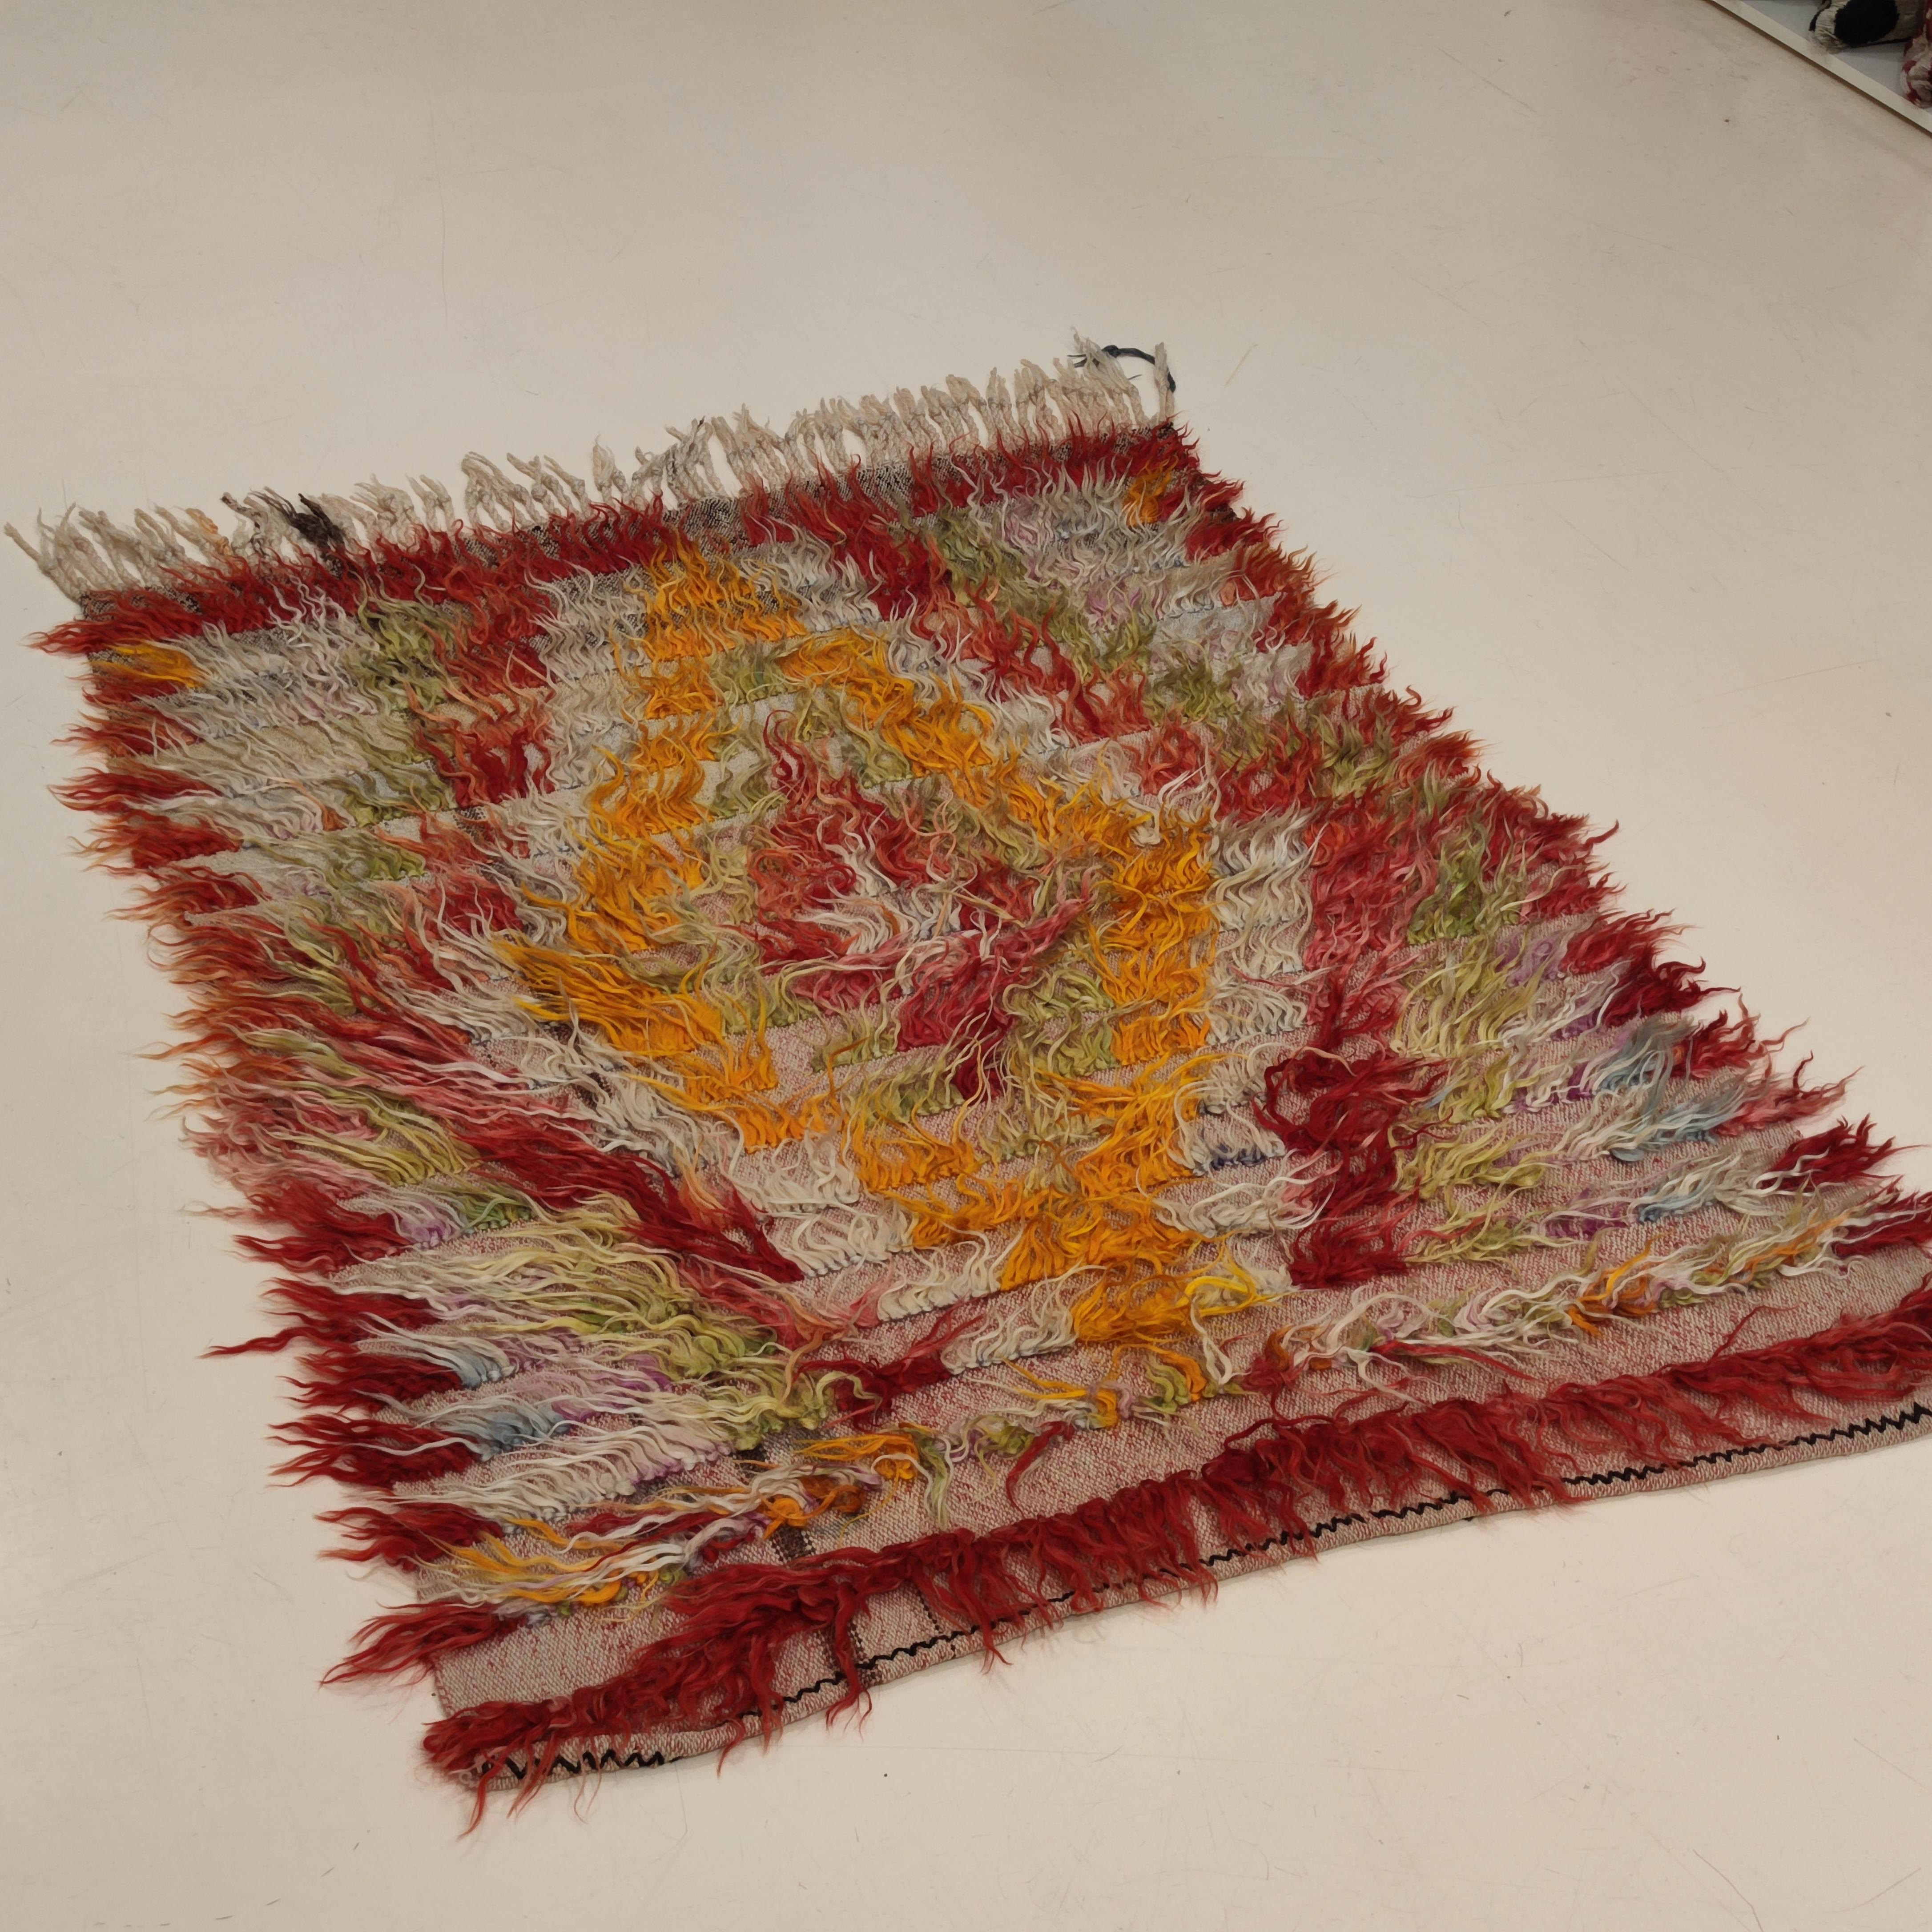 Die Filikli-Teppiche stellen wahrscheinlich die älteste und primitivste Form des Webens dar, die der Menschheit bekannt ist und die im Laufe von einigen tausend Jahren kaum verändert wurde. Ursprünglich waren sie als gewebter Ersatz für Pelz